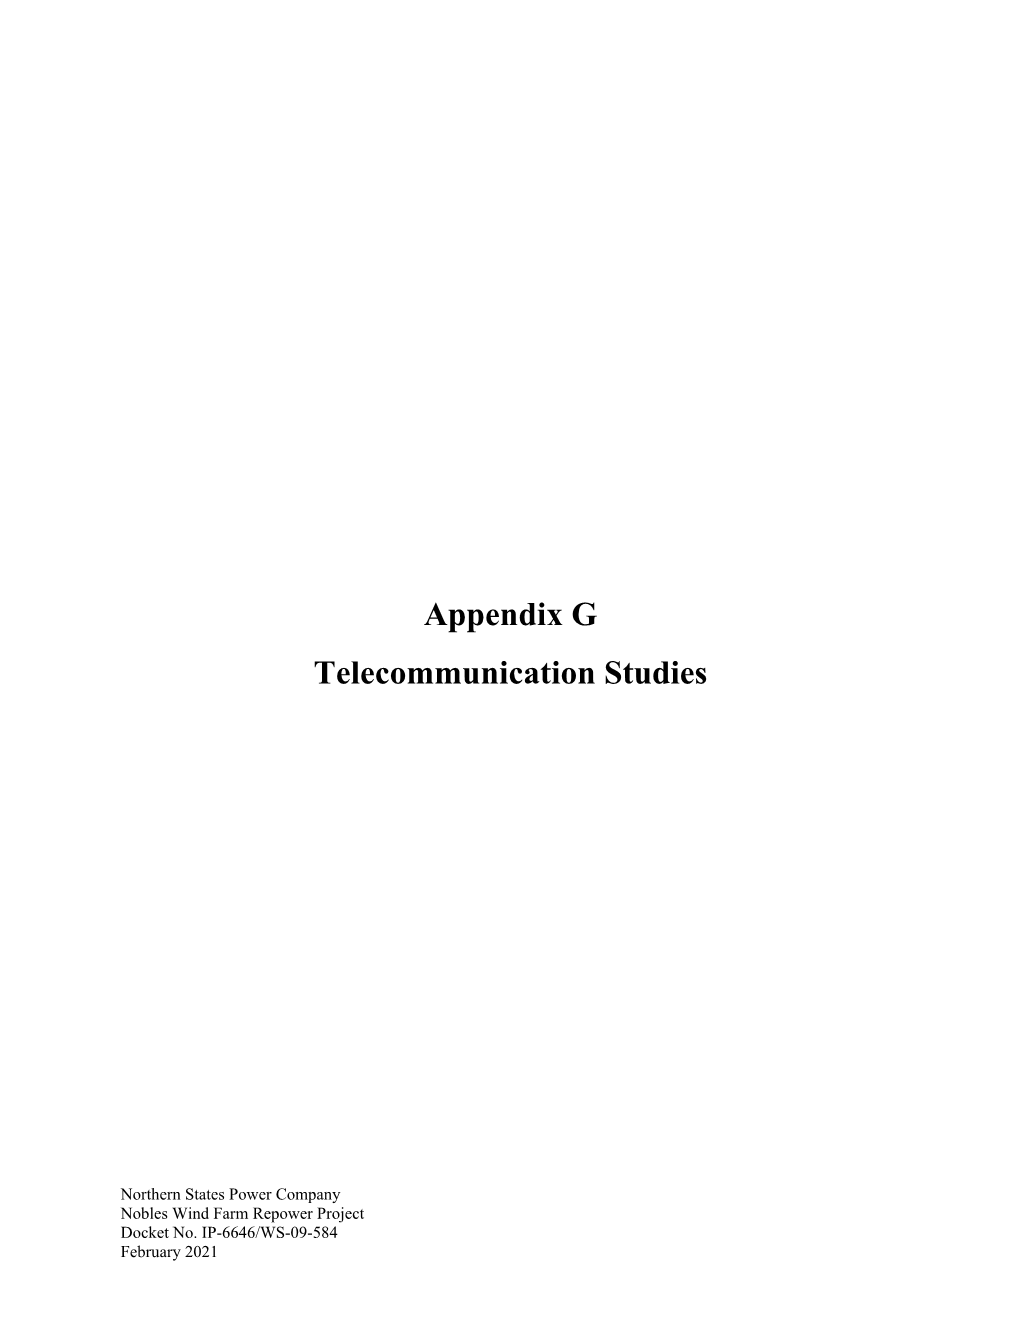 Appendix G Telecommunication Studies